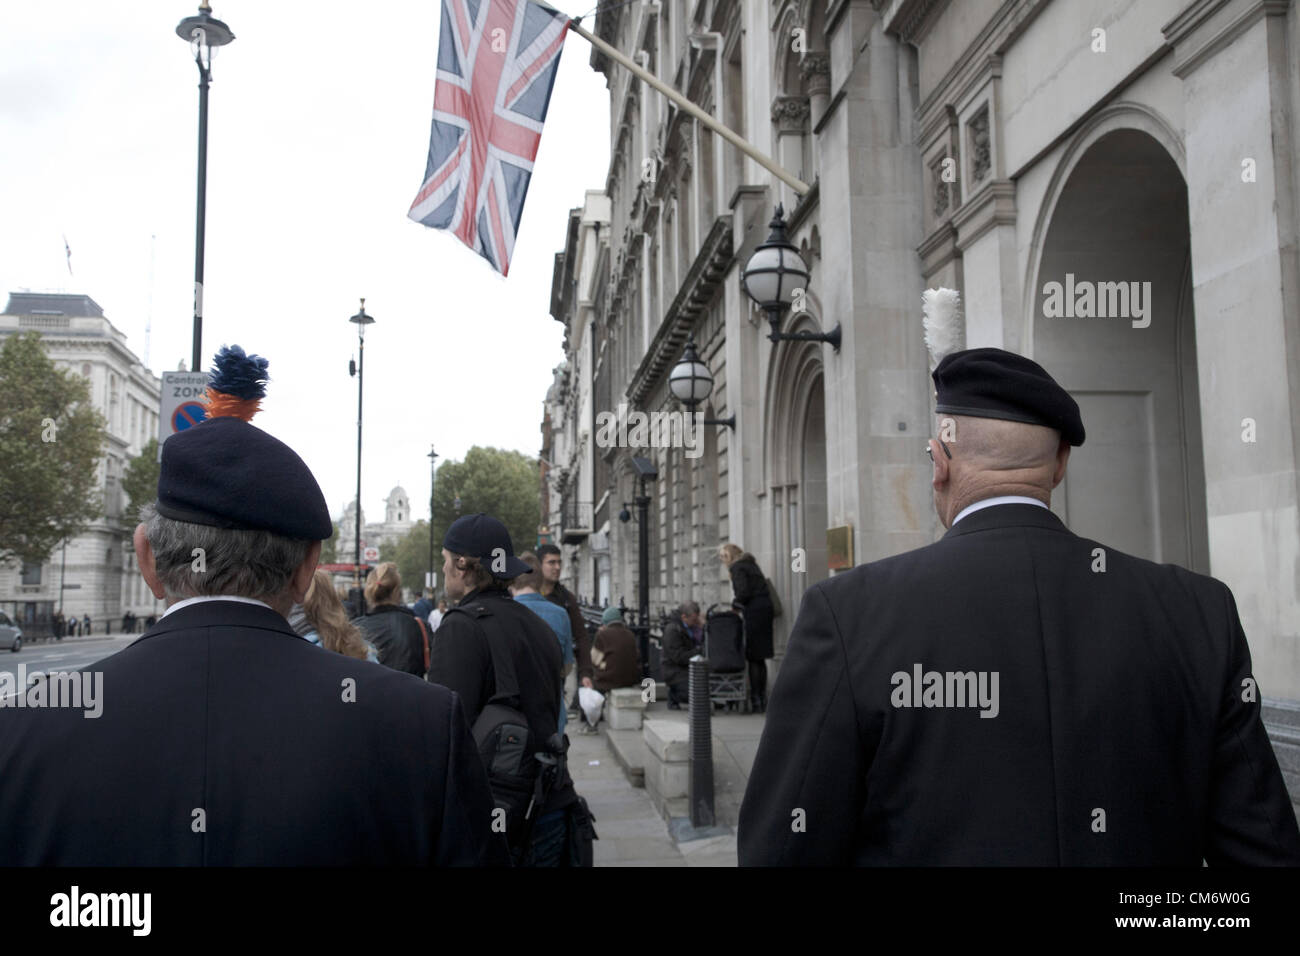 Il 18 ottobre 2012. Westminster London,UK veterano soldati del secondo battaglione del reggimento reale di Fusiliers ha preso parte a una marcia di protesta contro i tagli della difesa che comporterebbe lo scioglimento della loro unità di reggimento. Credito: amer ghazzal / Alamy Live News Foto Stock